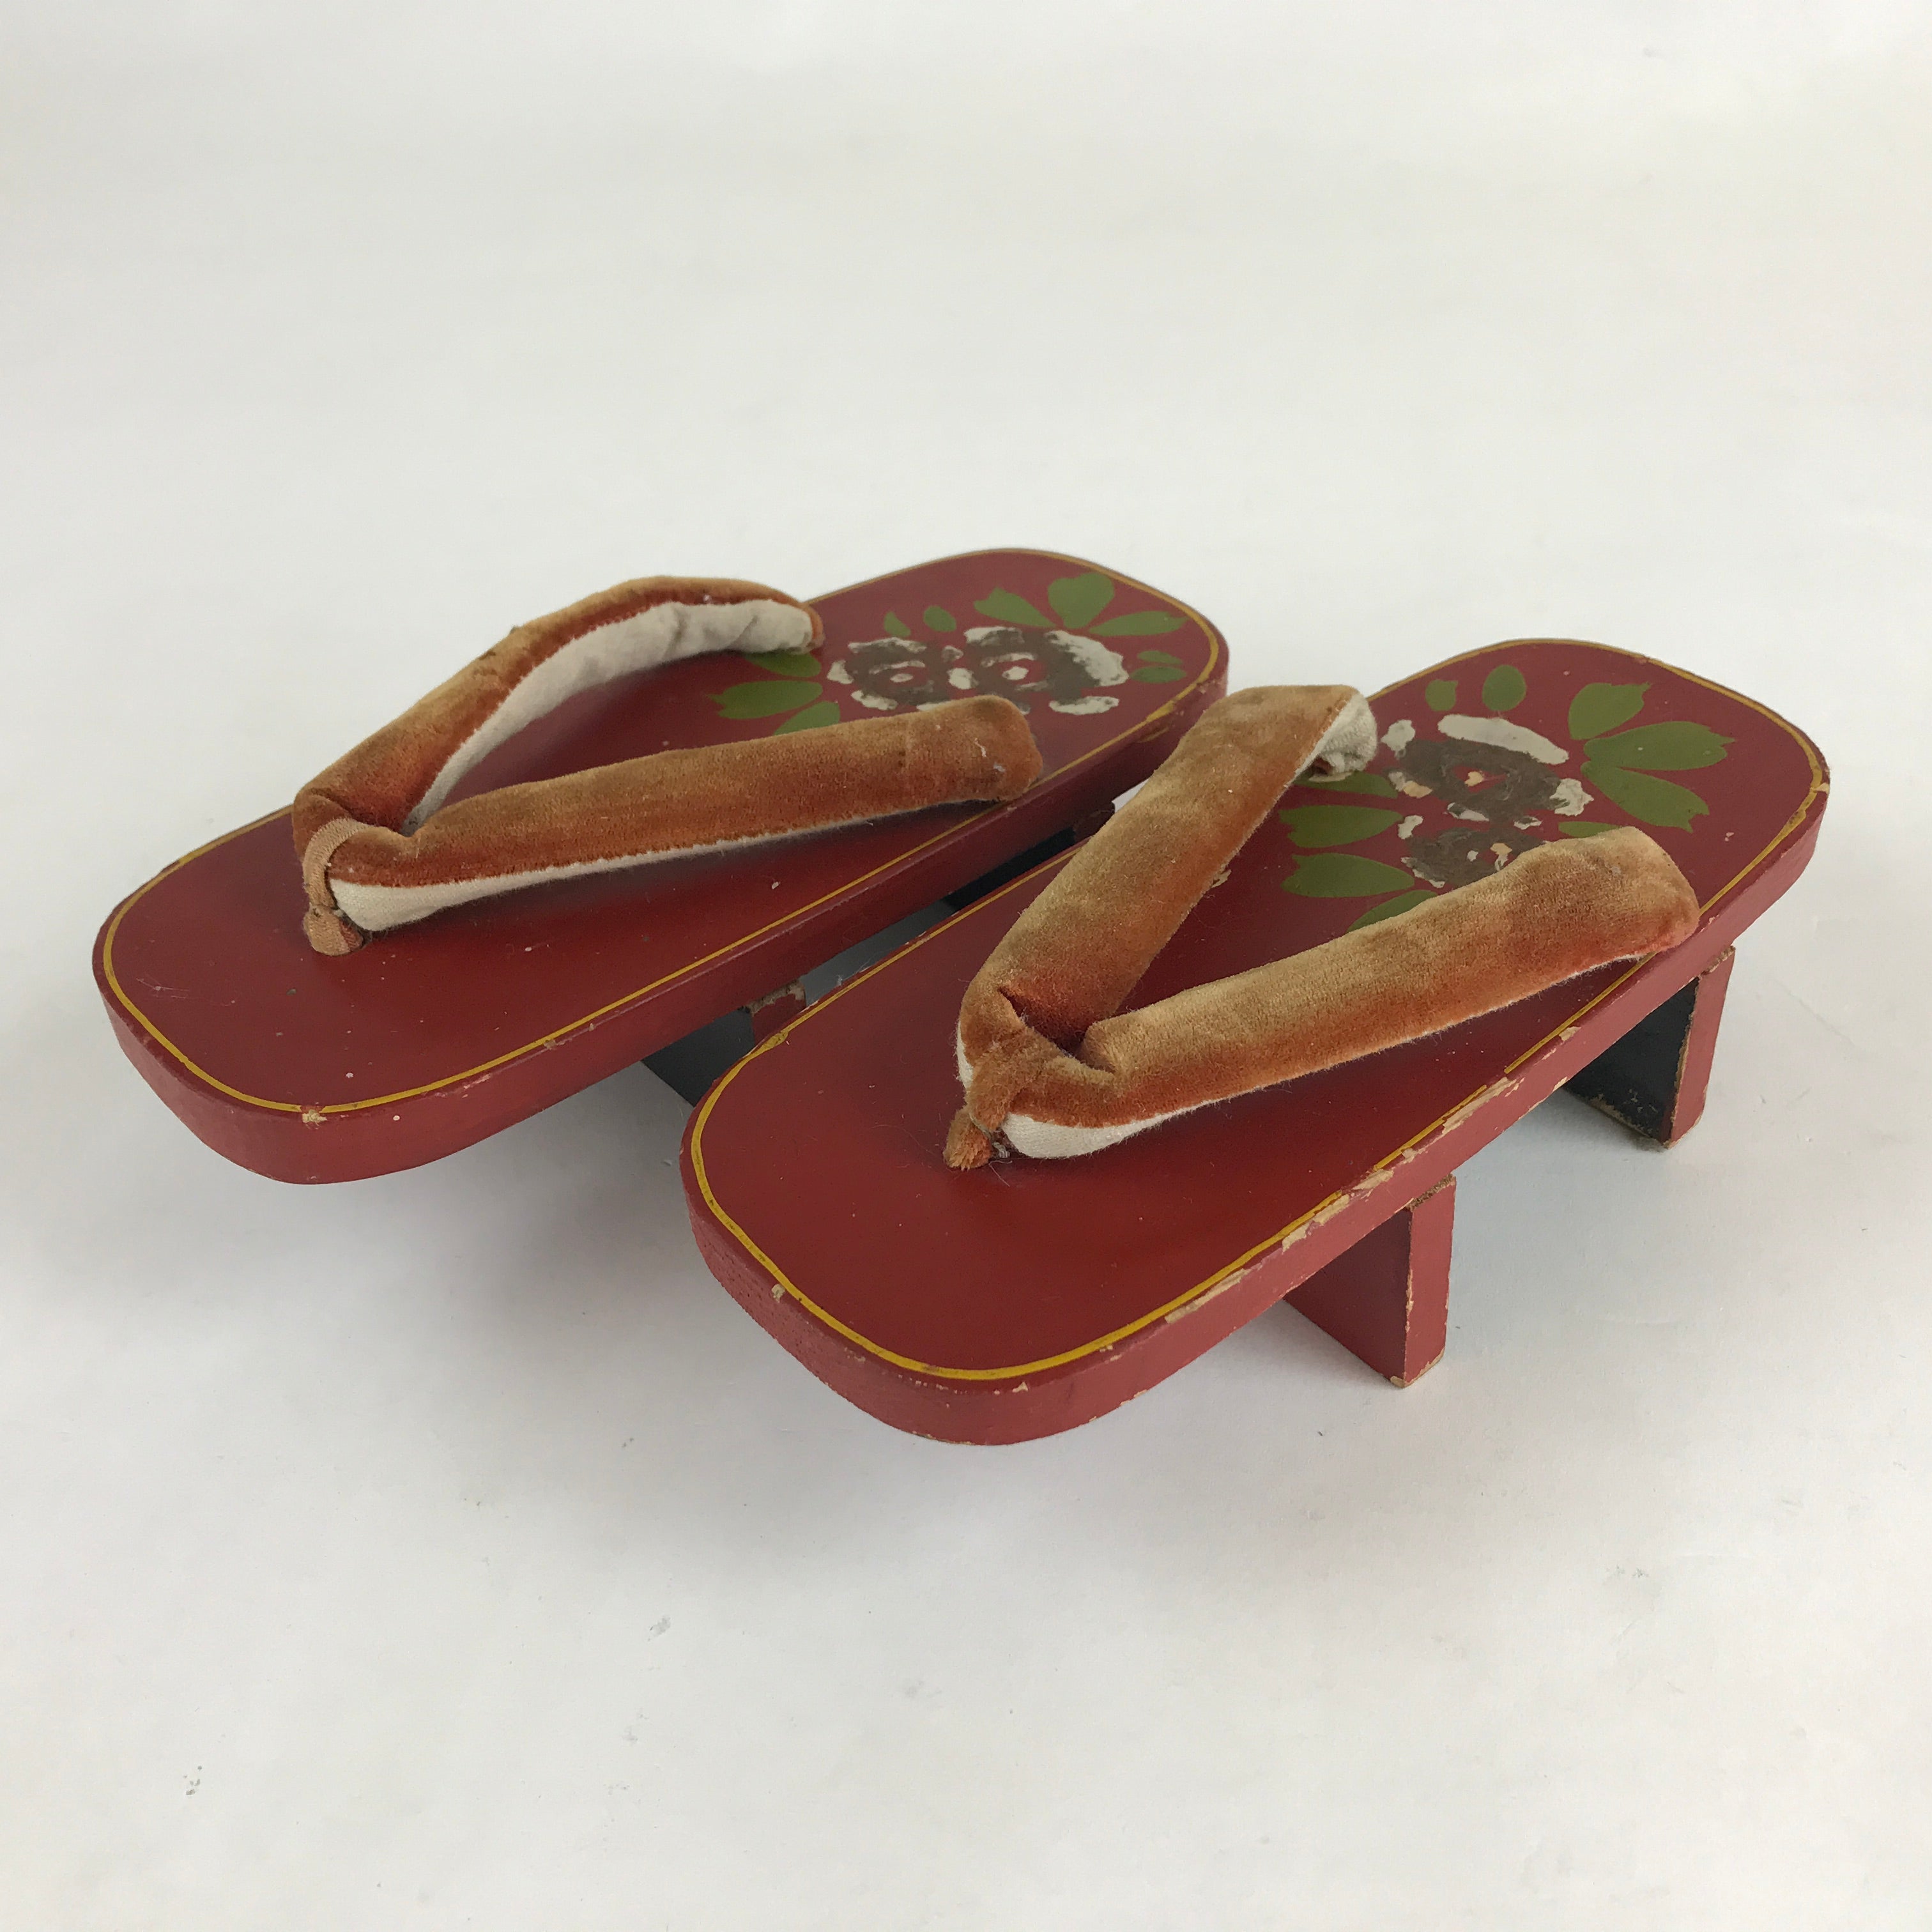 Tibetan wooden sandals worn by Buddhist monks.